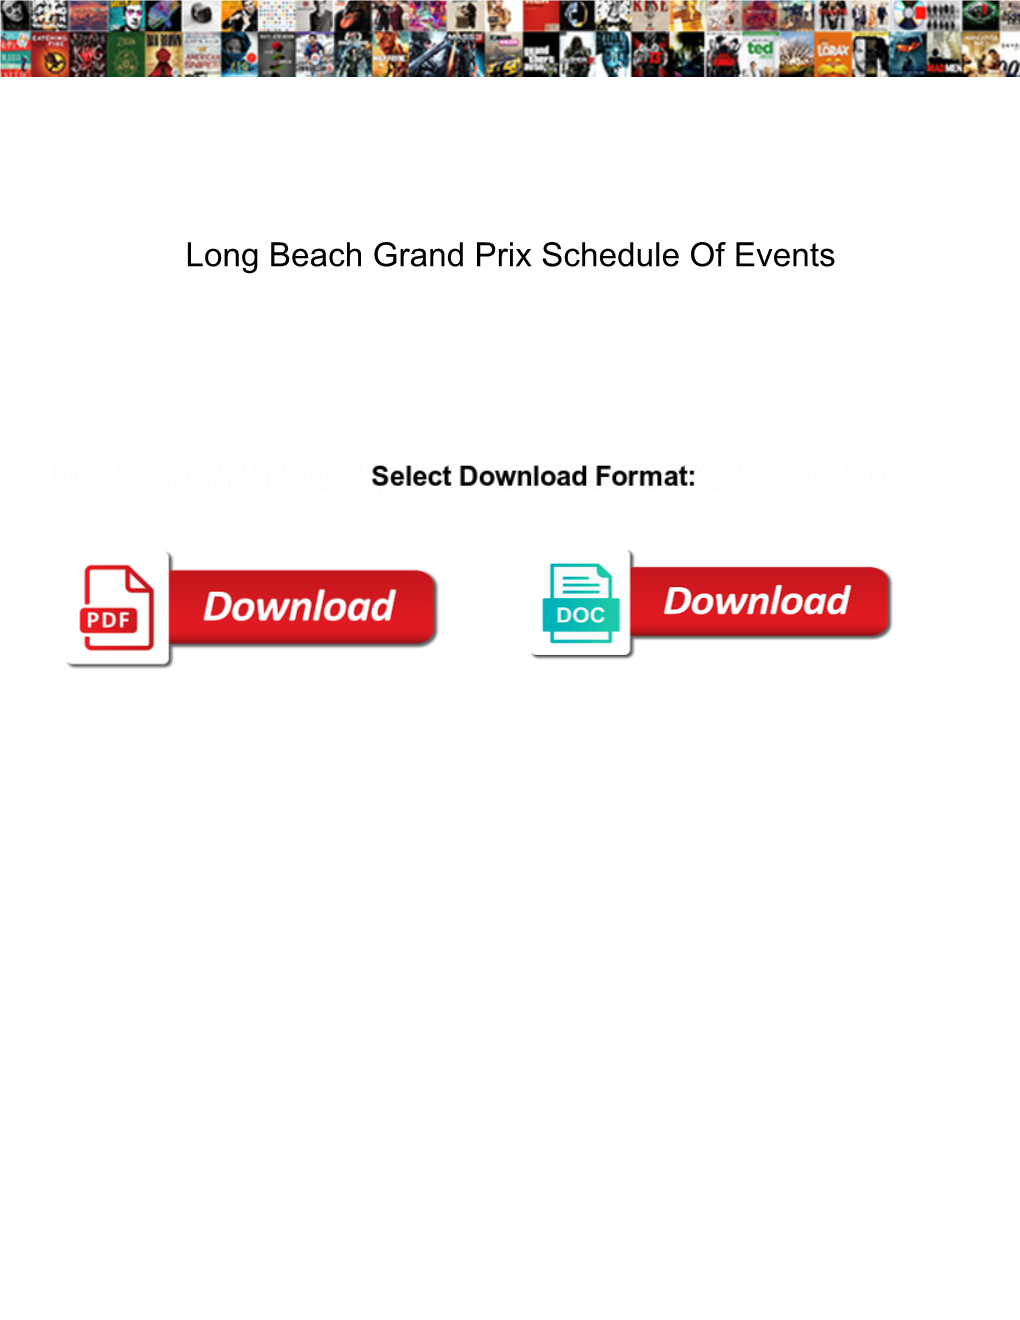 Long Beach Grand Prix Schedule of Events